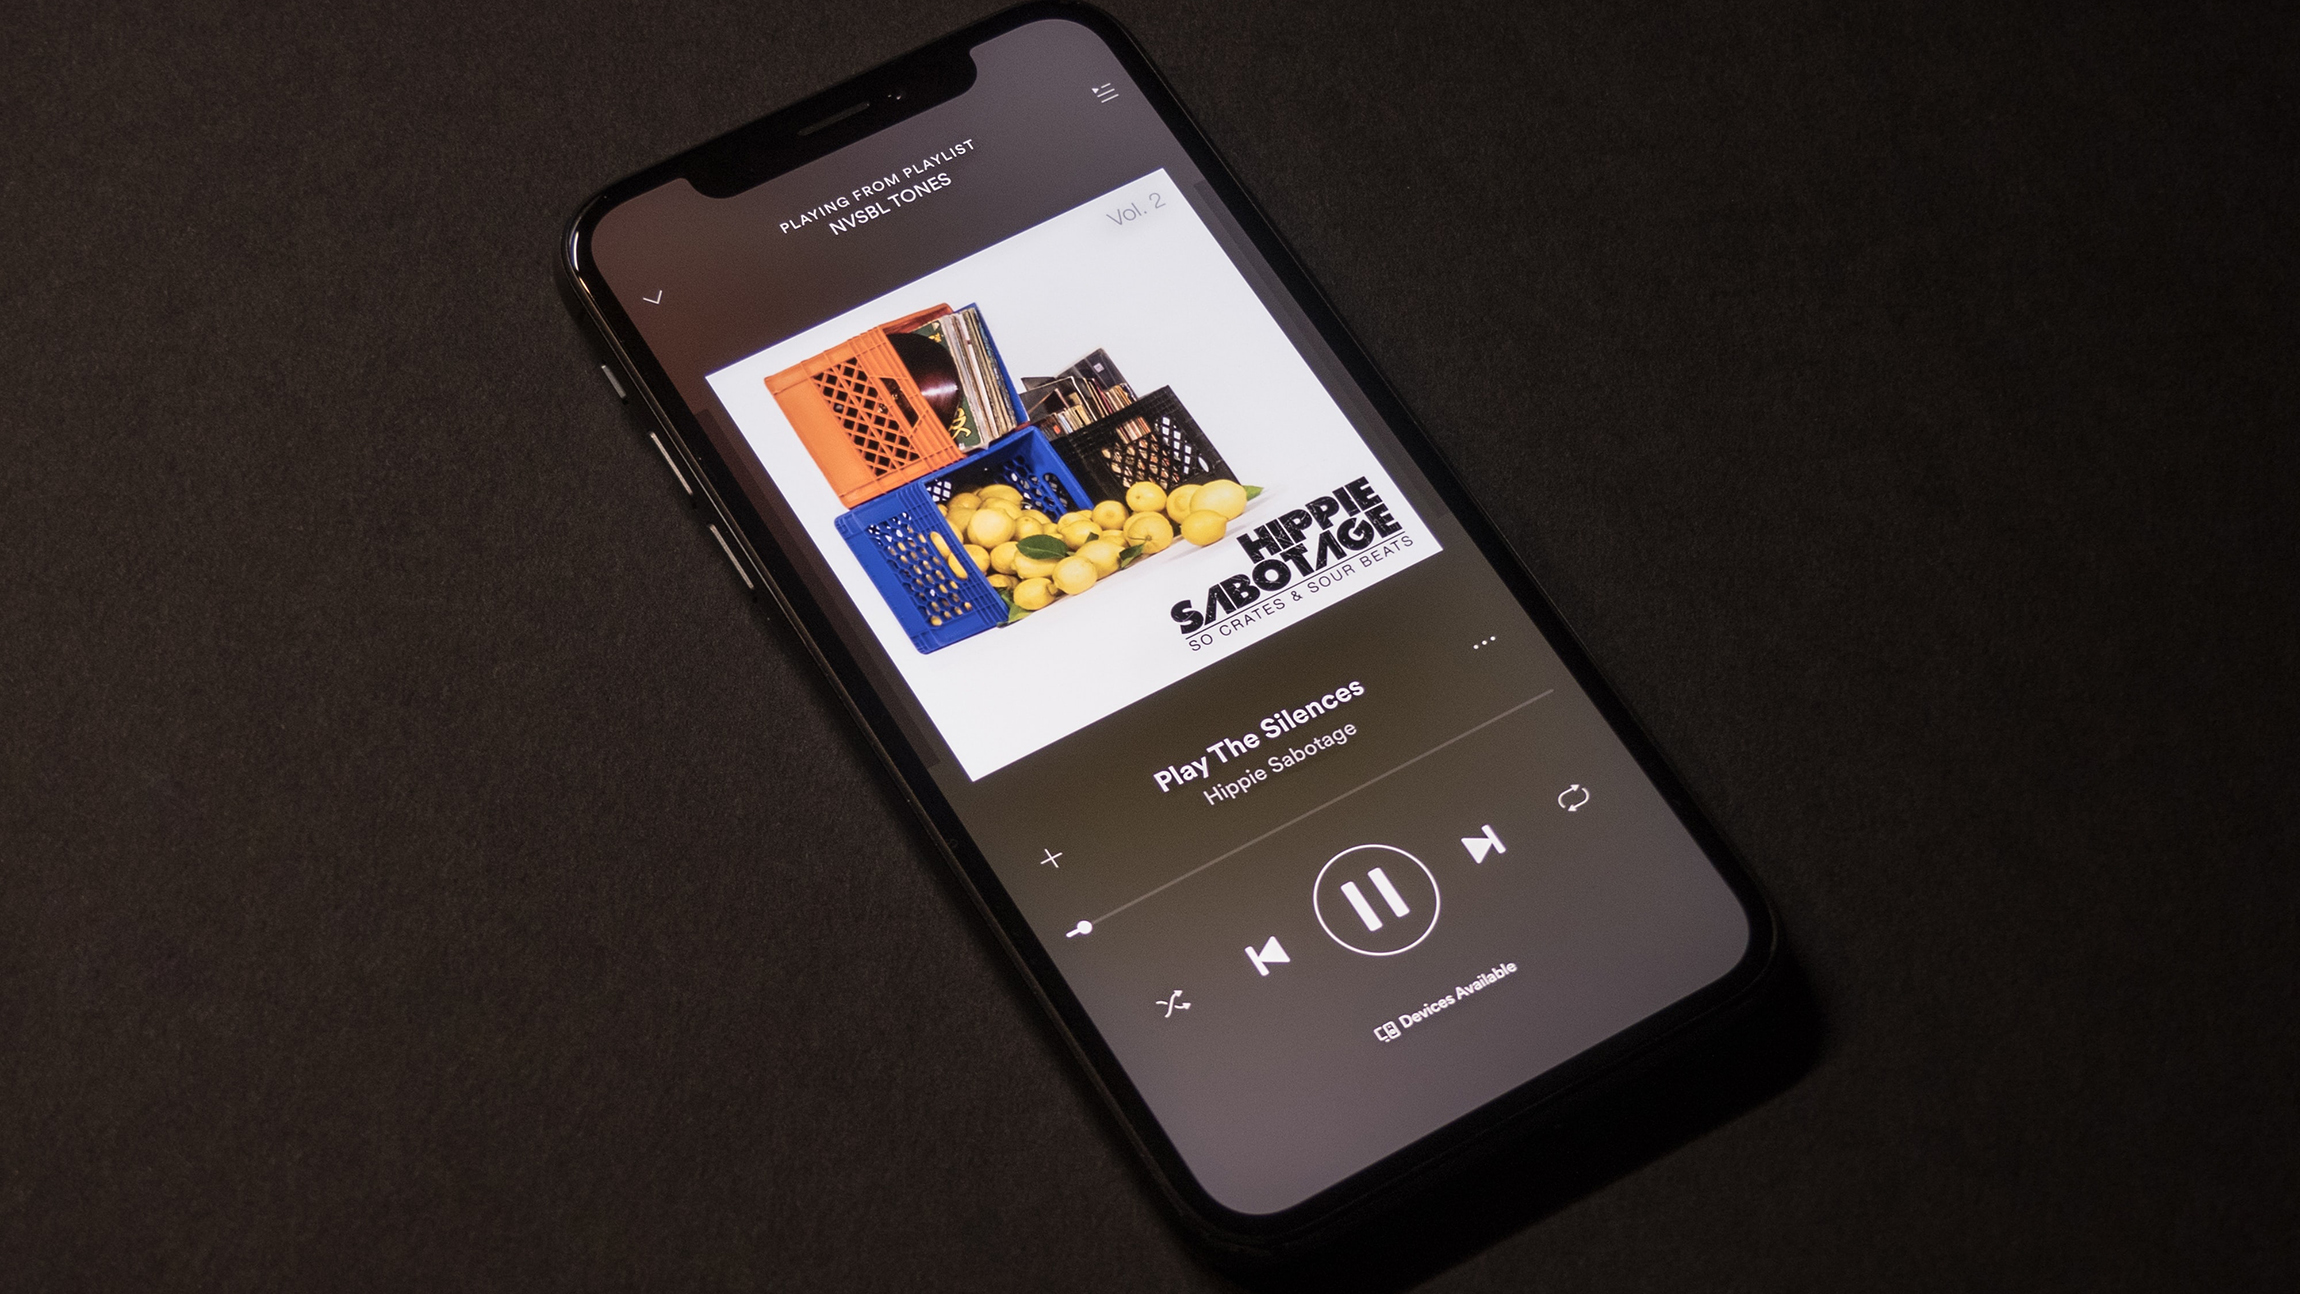 Spotify compra plataforma de audiobooks rival da Amazon